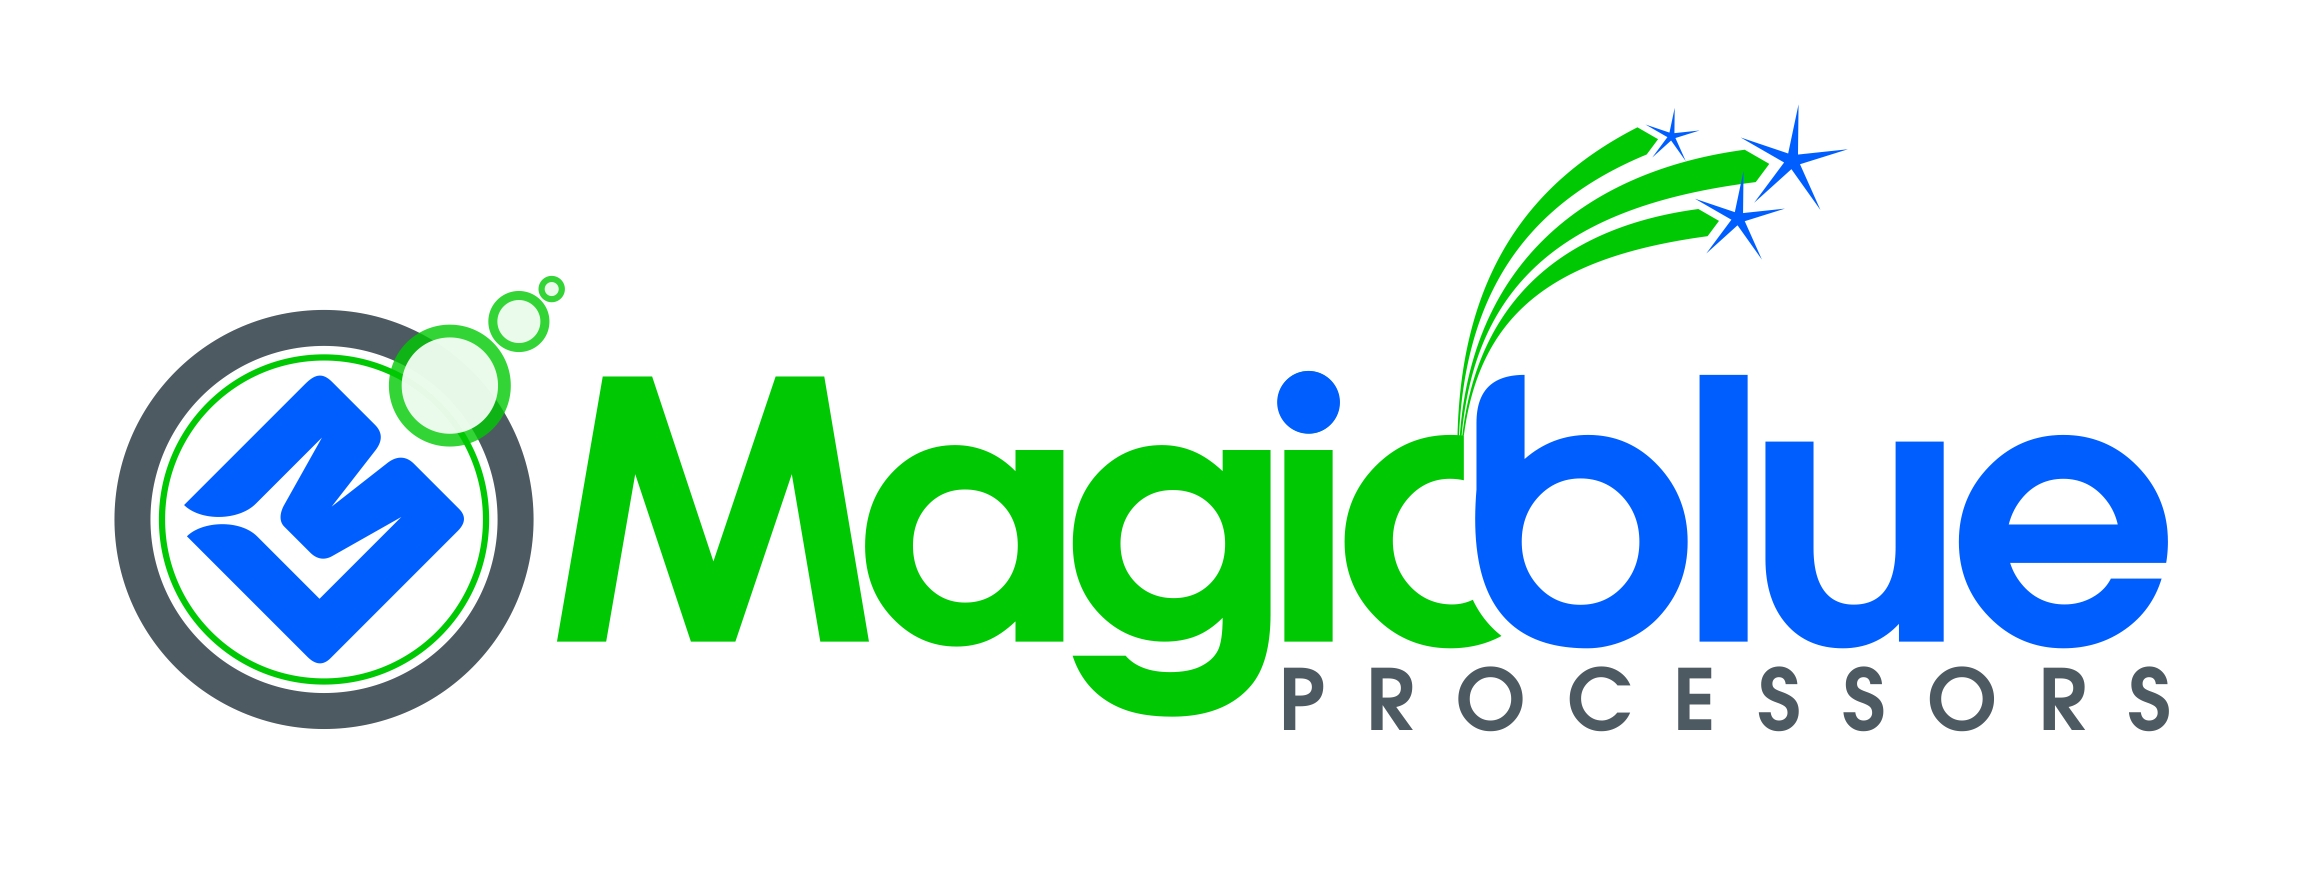 magicblue-processors-logo-graphic-design